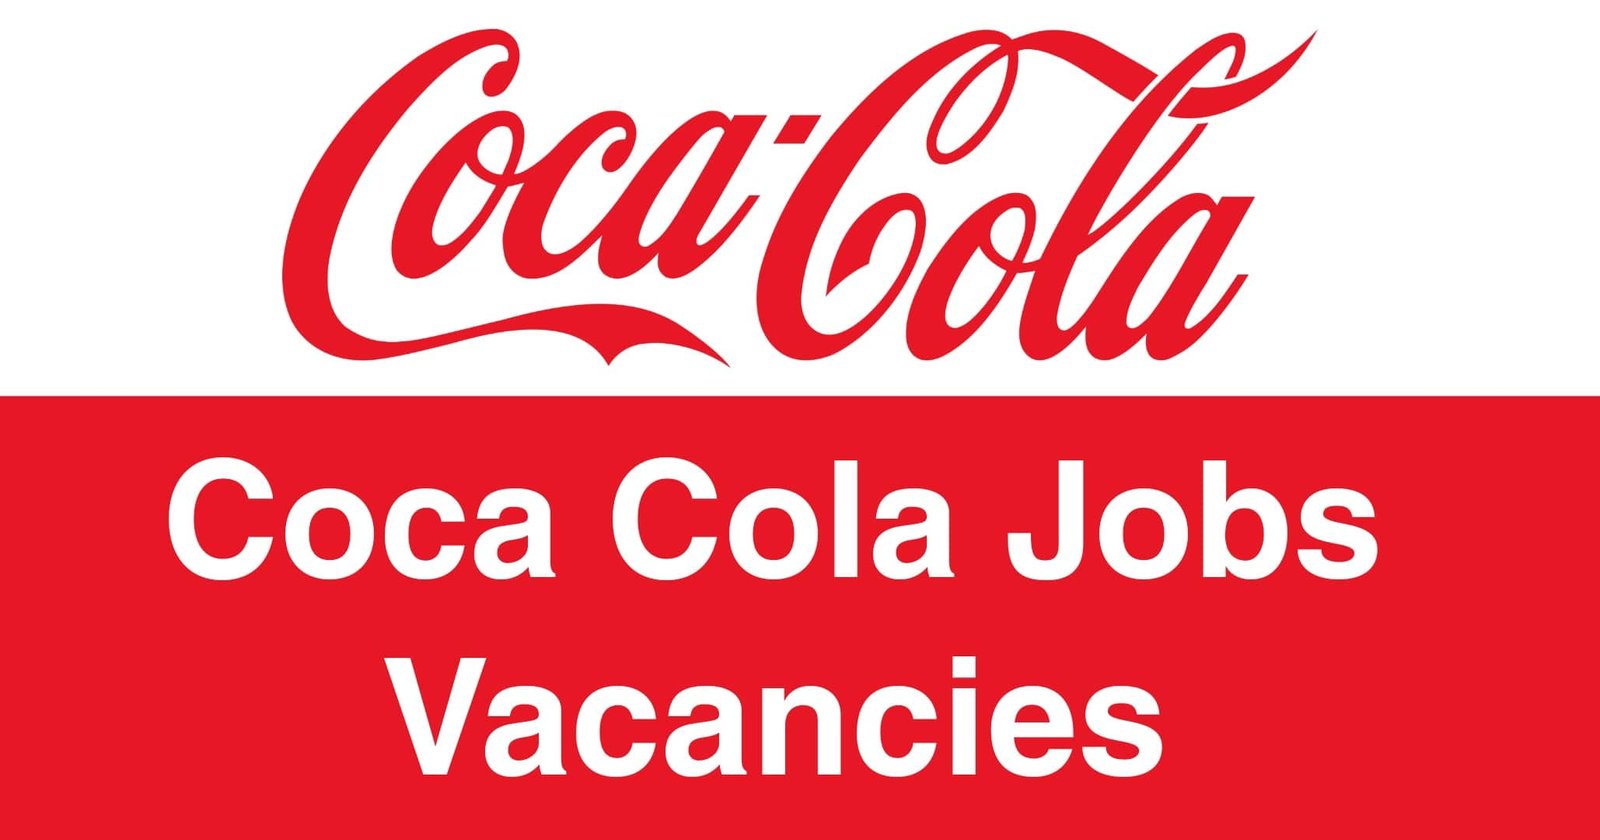 Coca Cola Jobs Vacancies